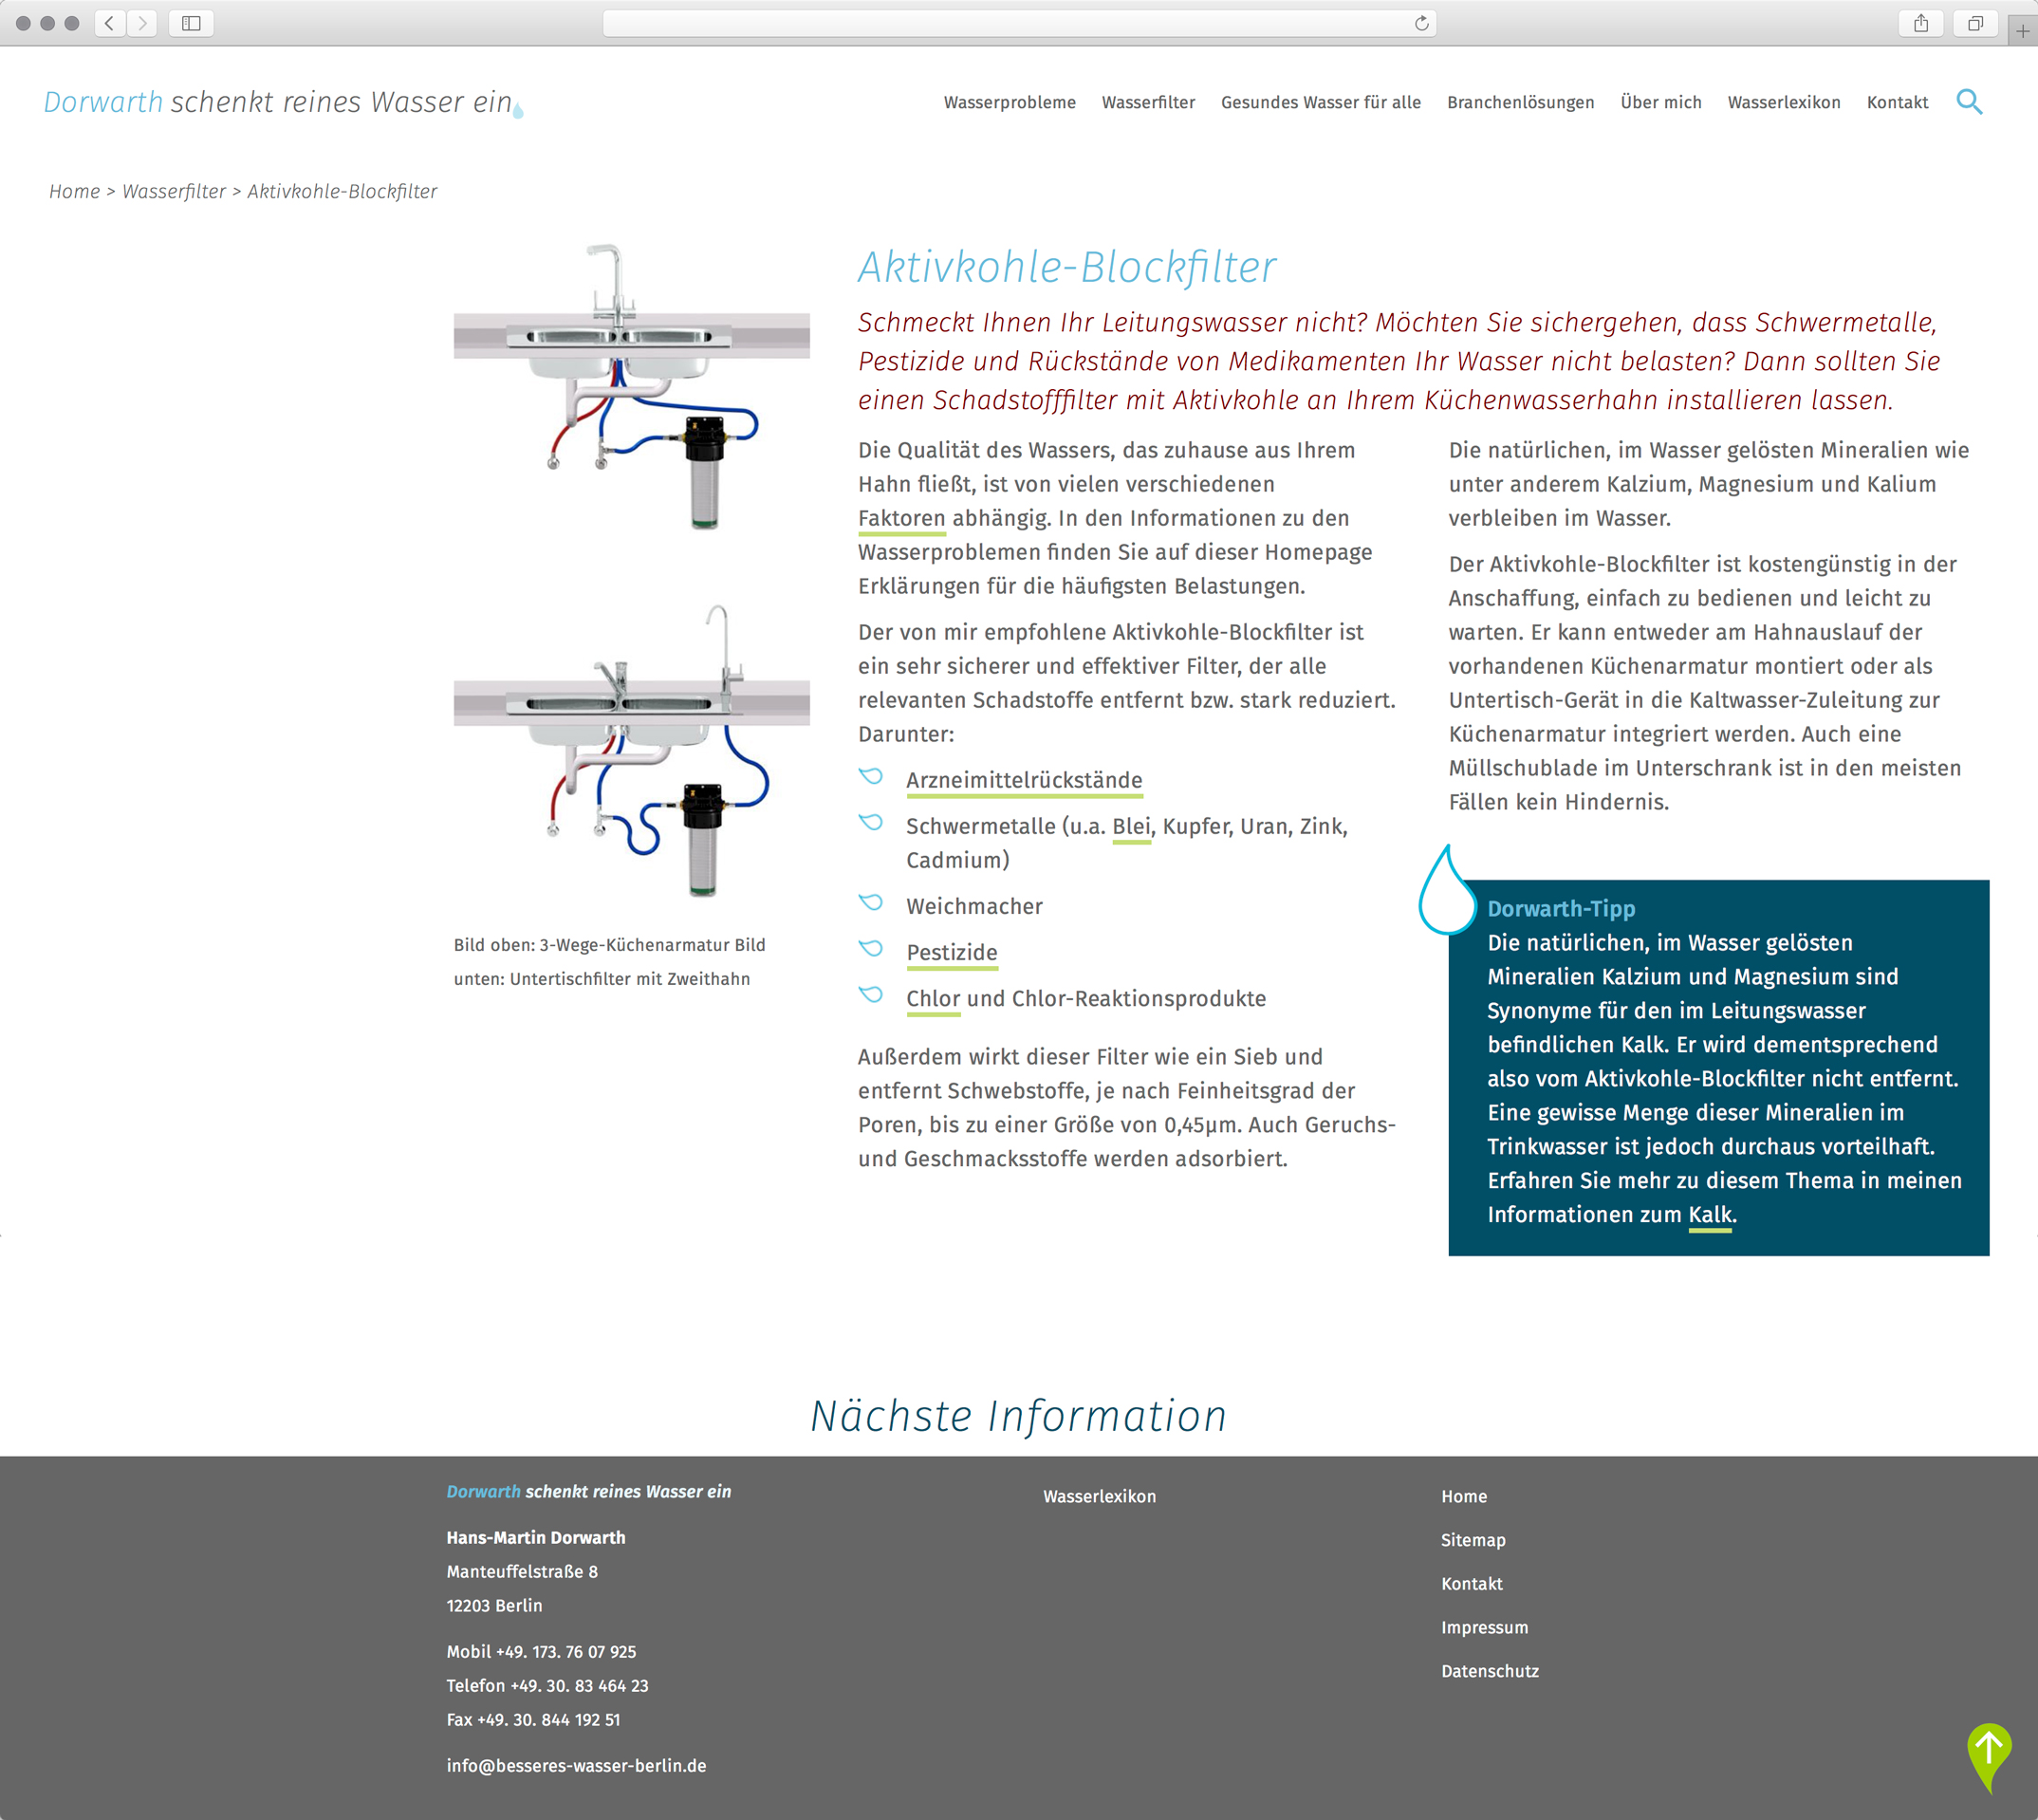 Webdesign, Unterseite Aktivkohle Blockfilter – Corporate Website, Dorwarth Wasserexperte, Besseres Wasser Berlin